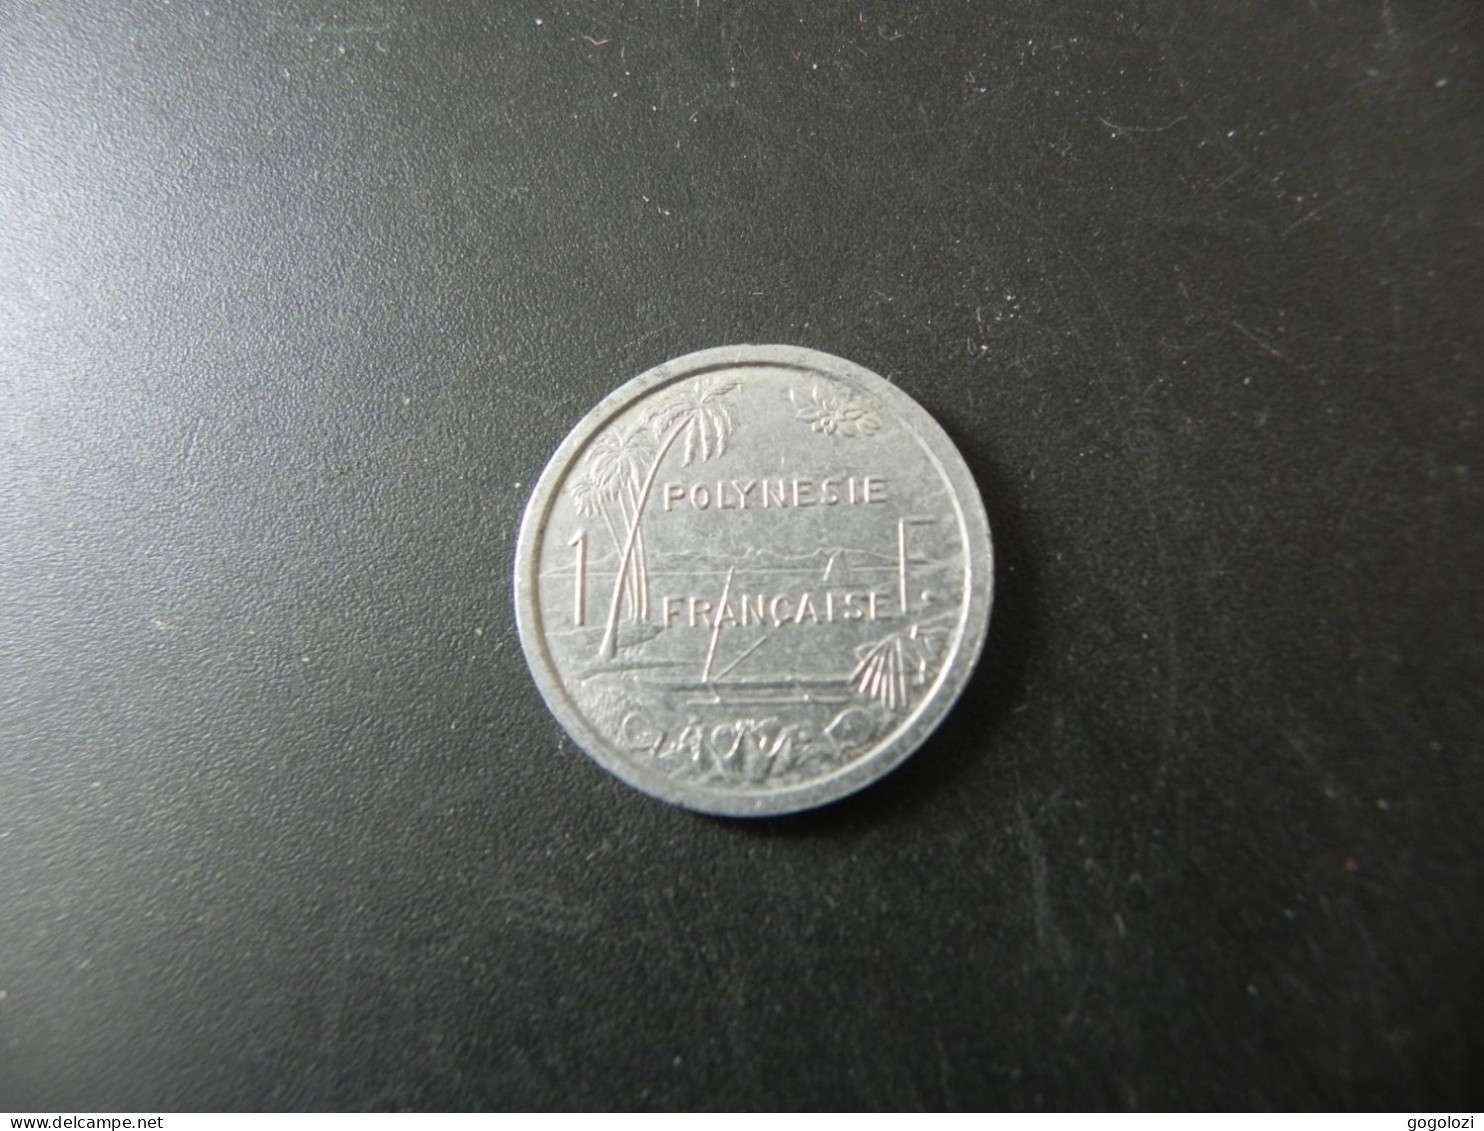 Polynesie Française 1 Franc 1987 - Französisch-Polynesien